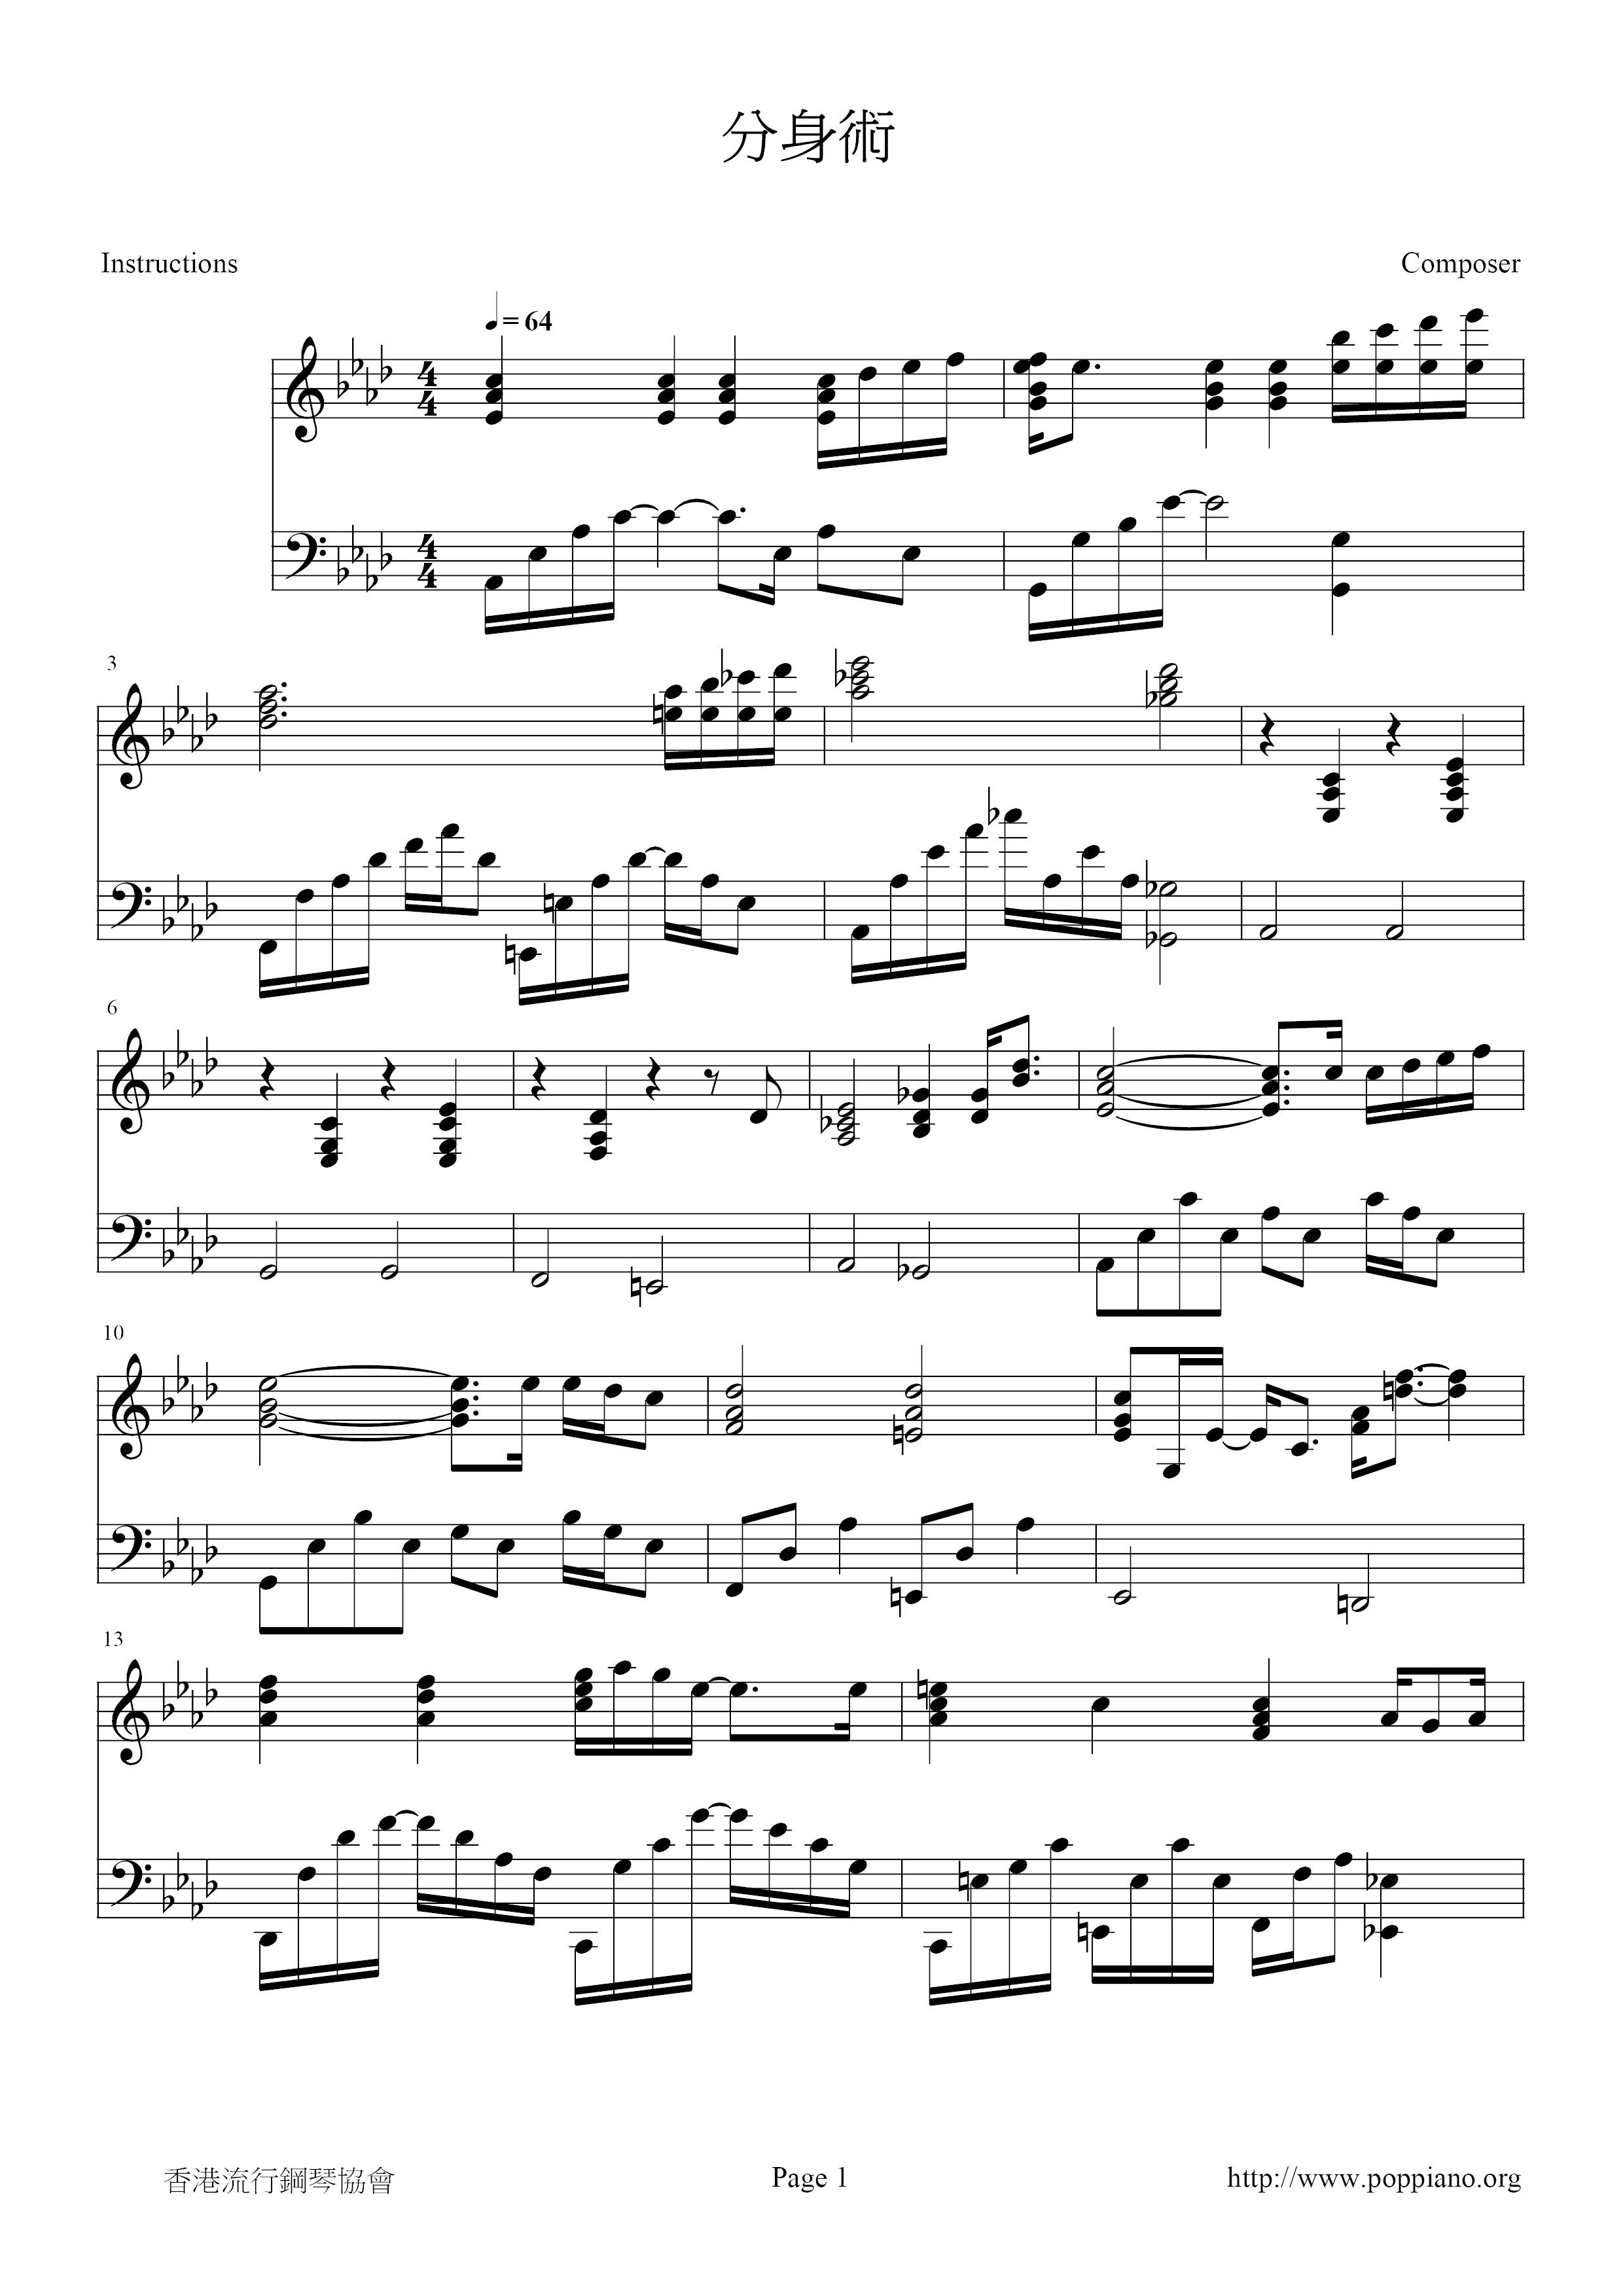 Clone Technique Score